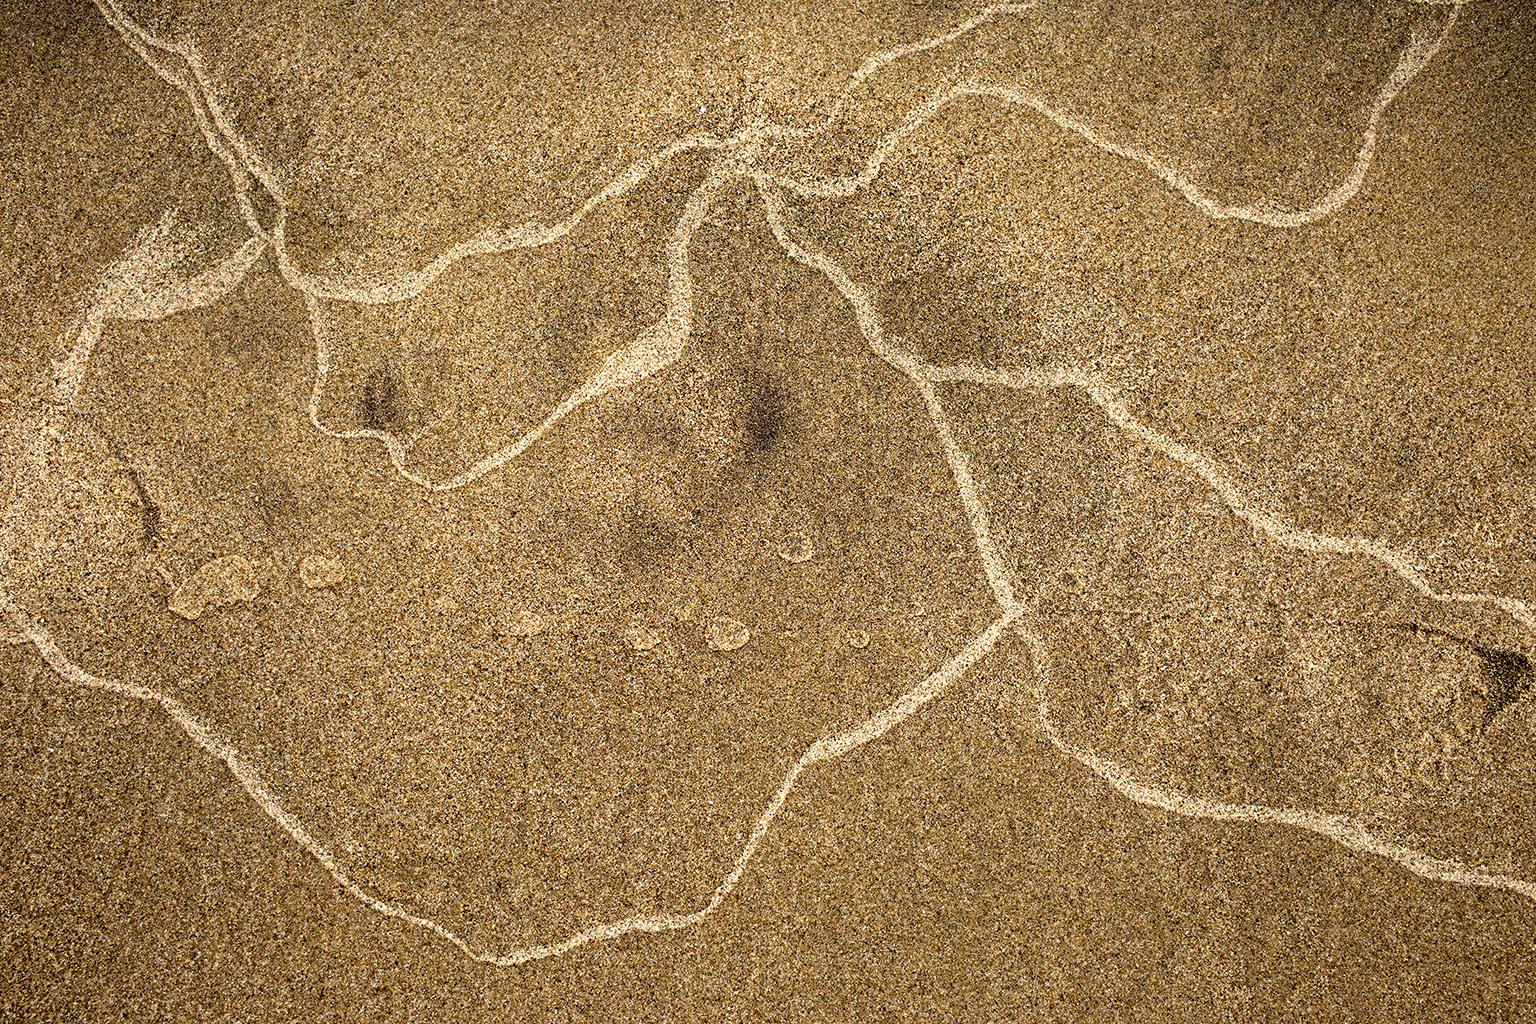 Sand No. 3 - Photograph by Chris Thomaidis